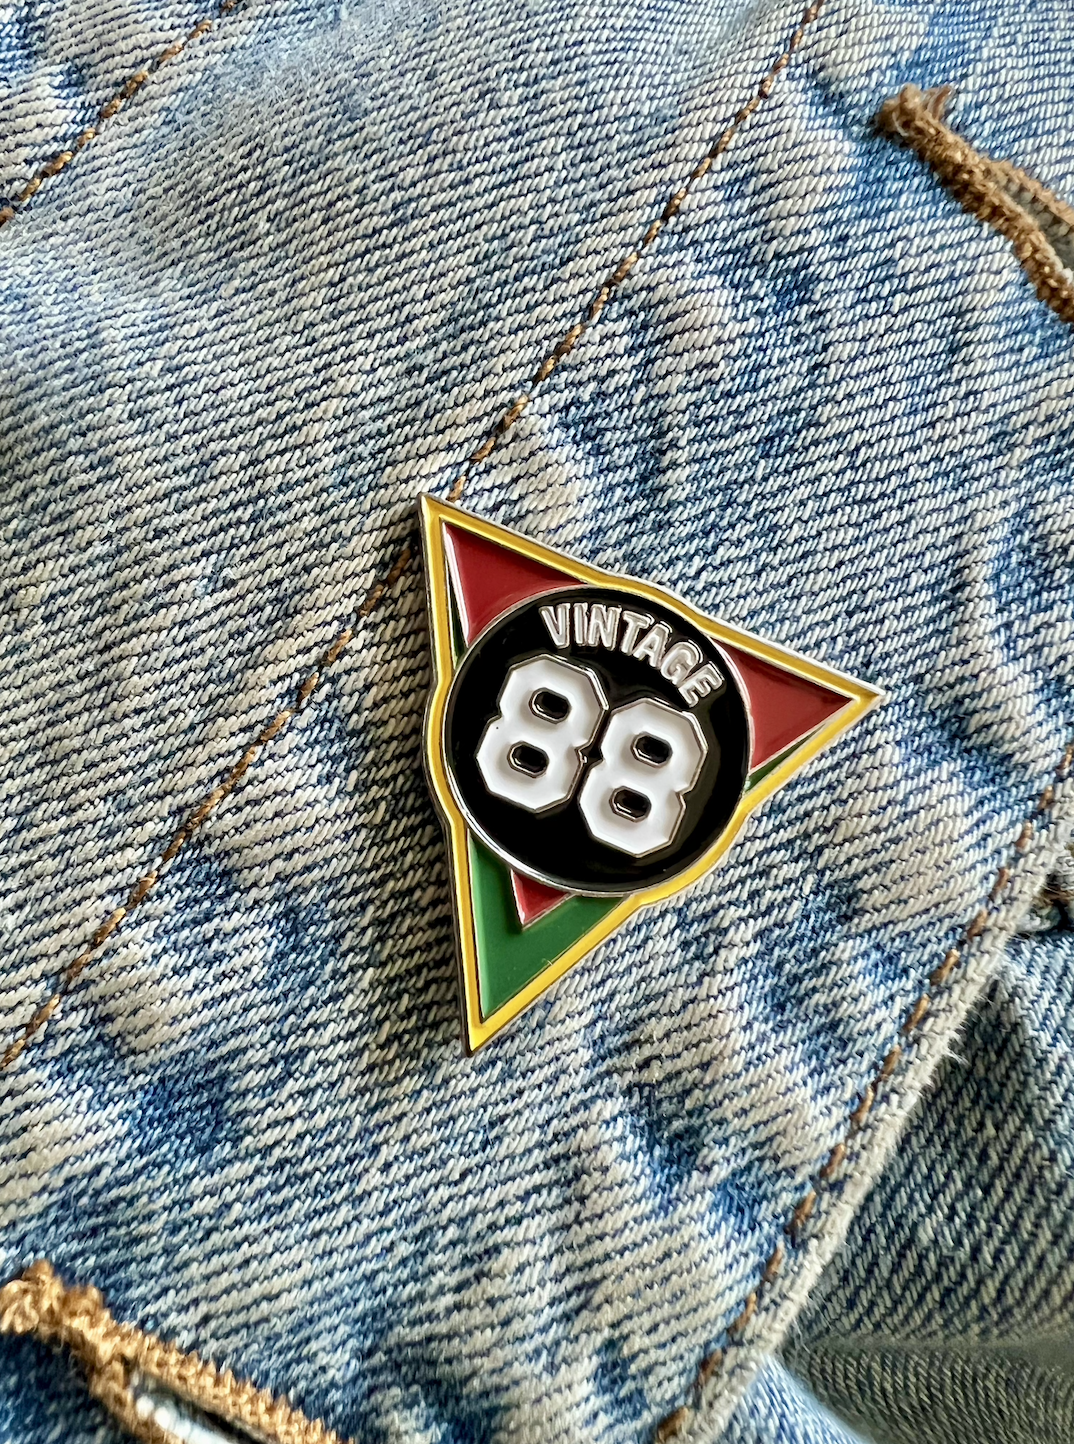 VINTAGE’88® Logo Pin